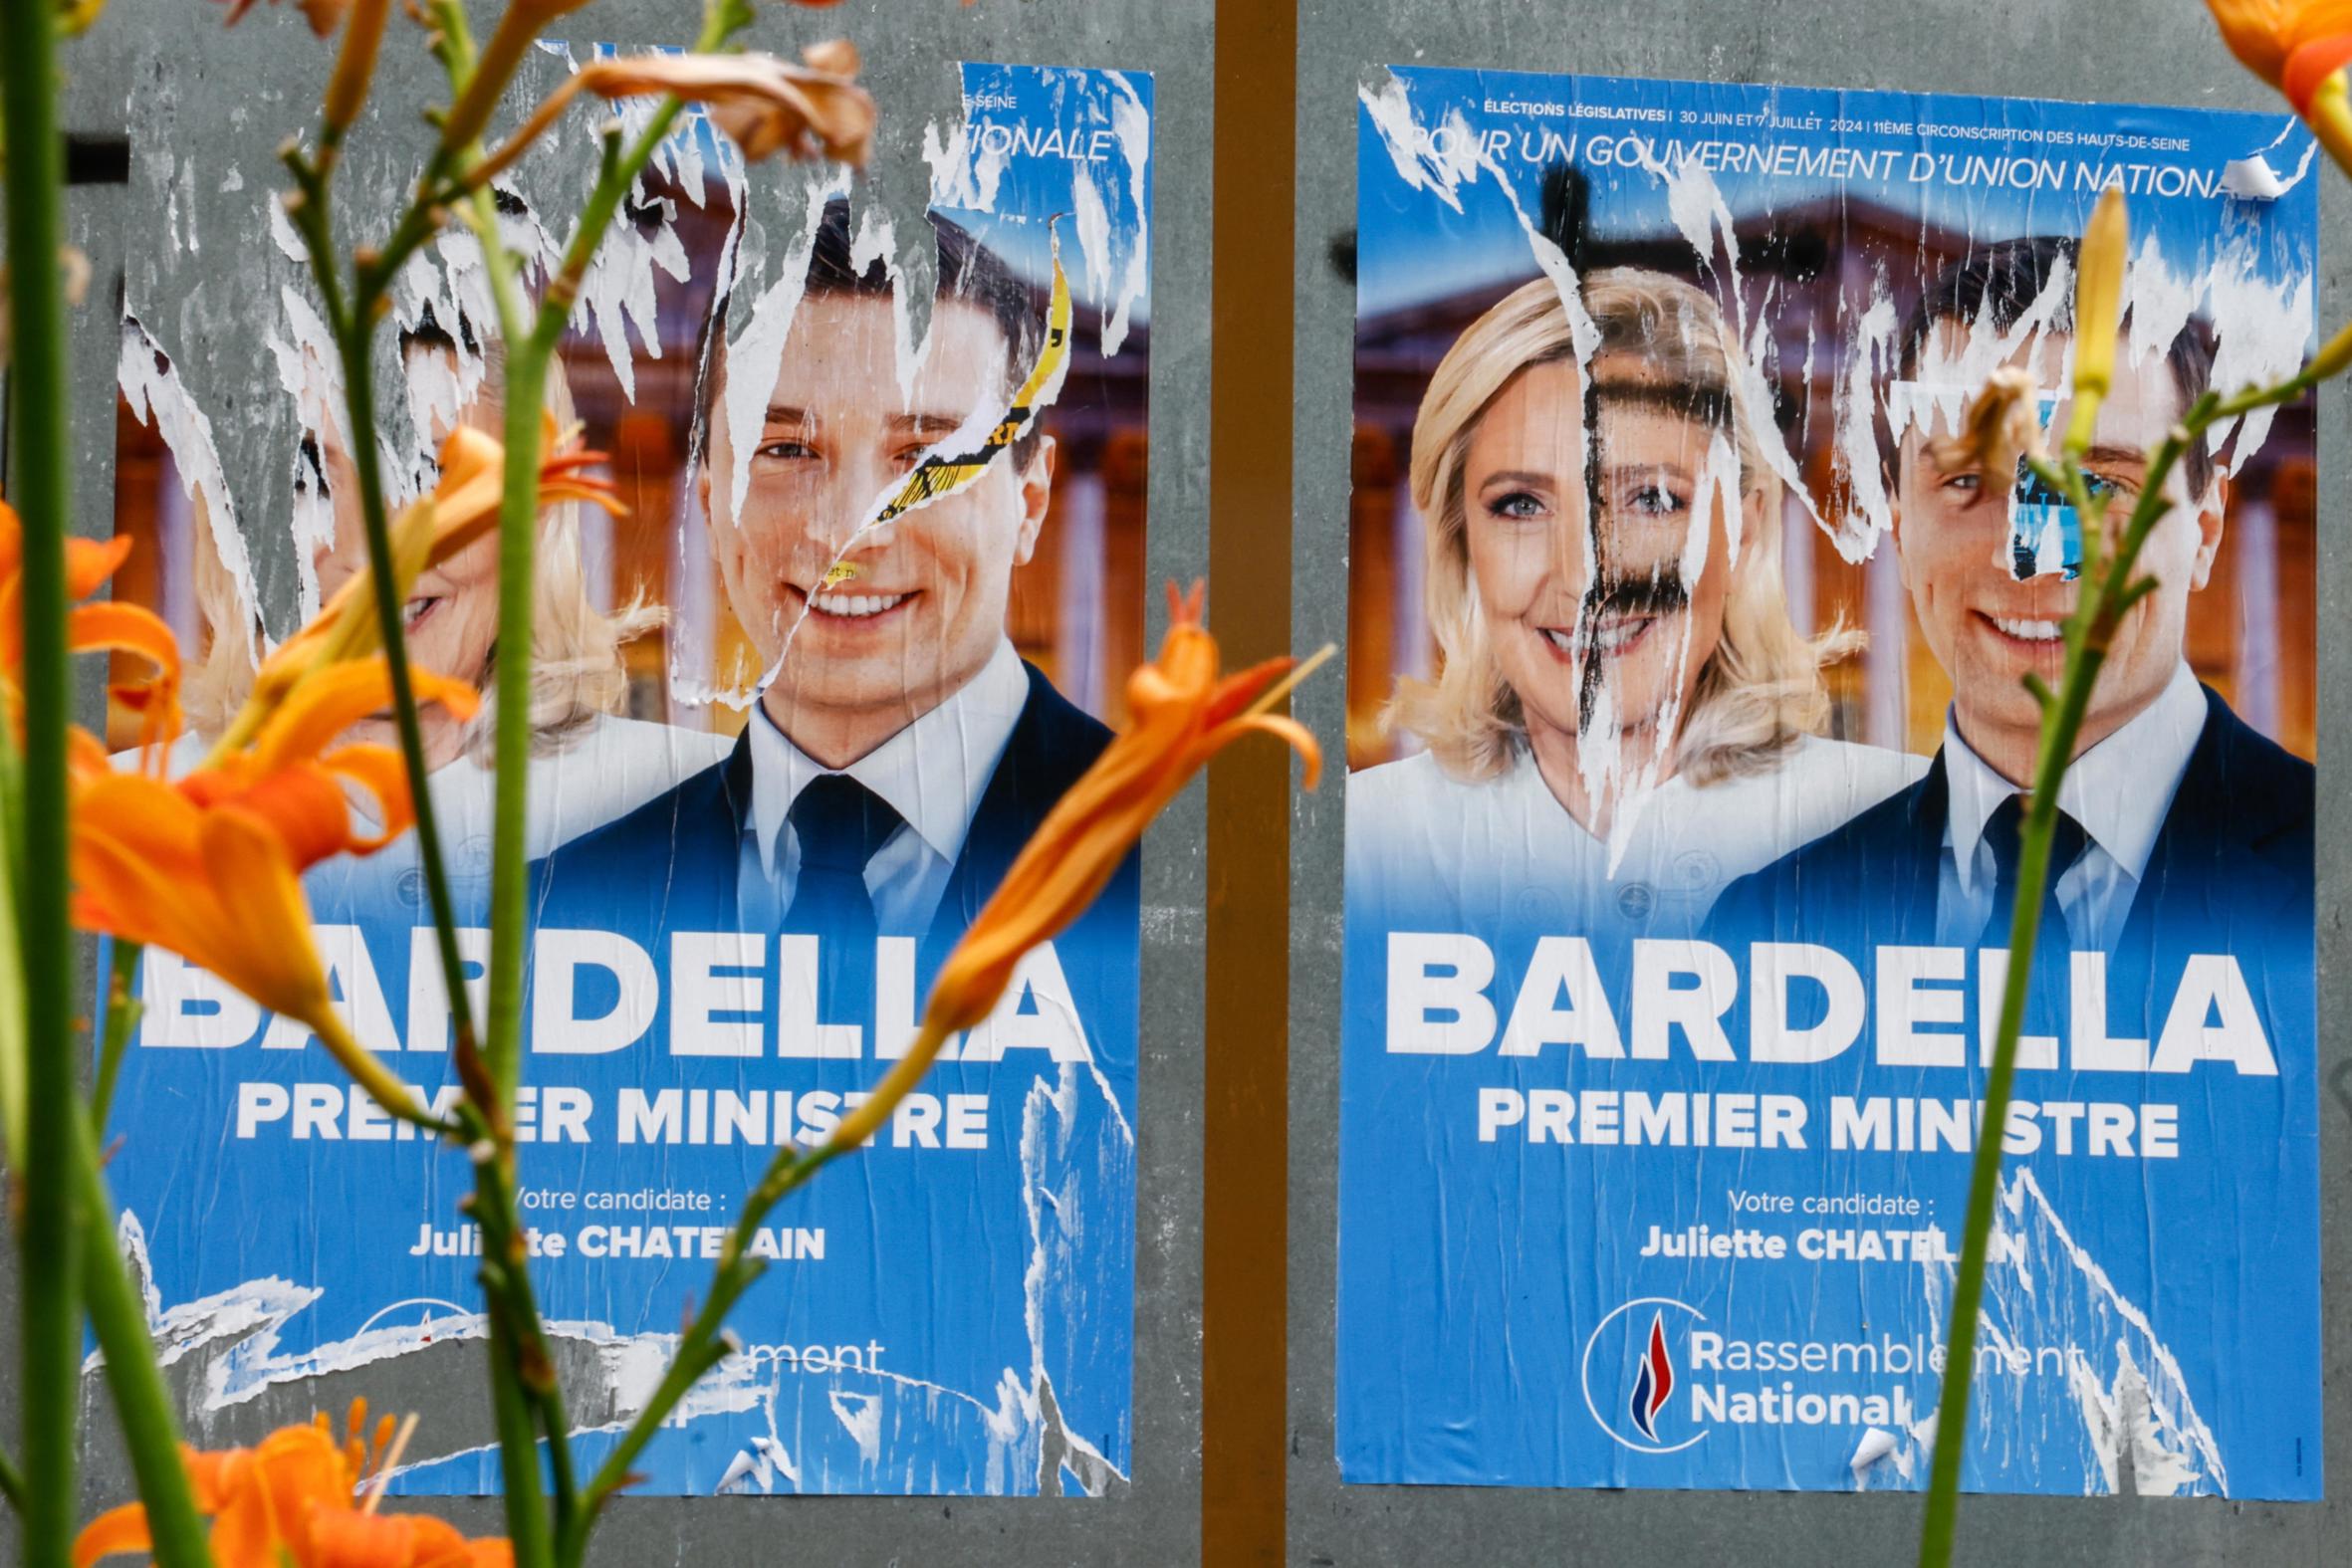 Cinc coses que cal tenir en compte a la primera volta de les eleccions franceses